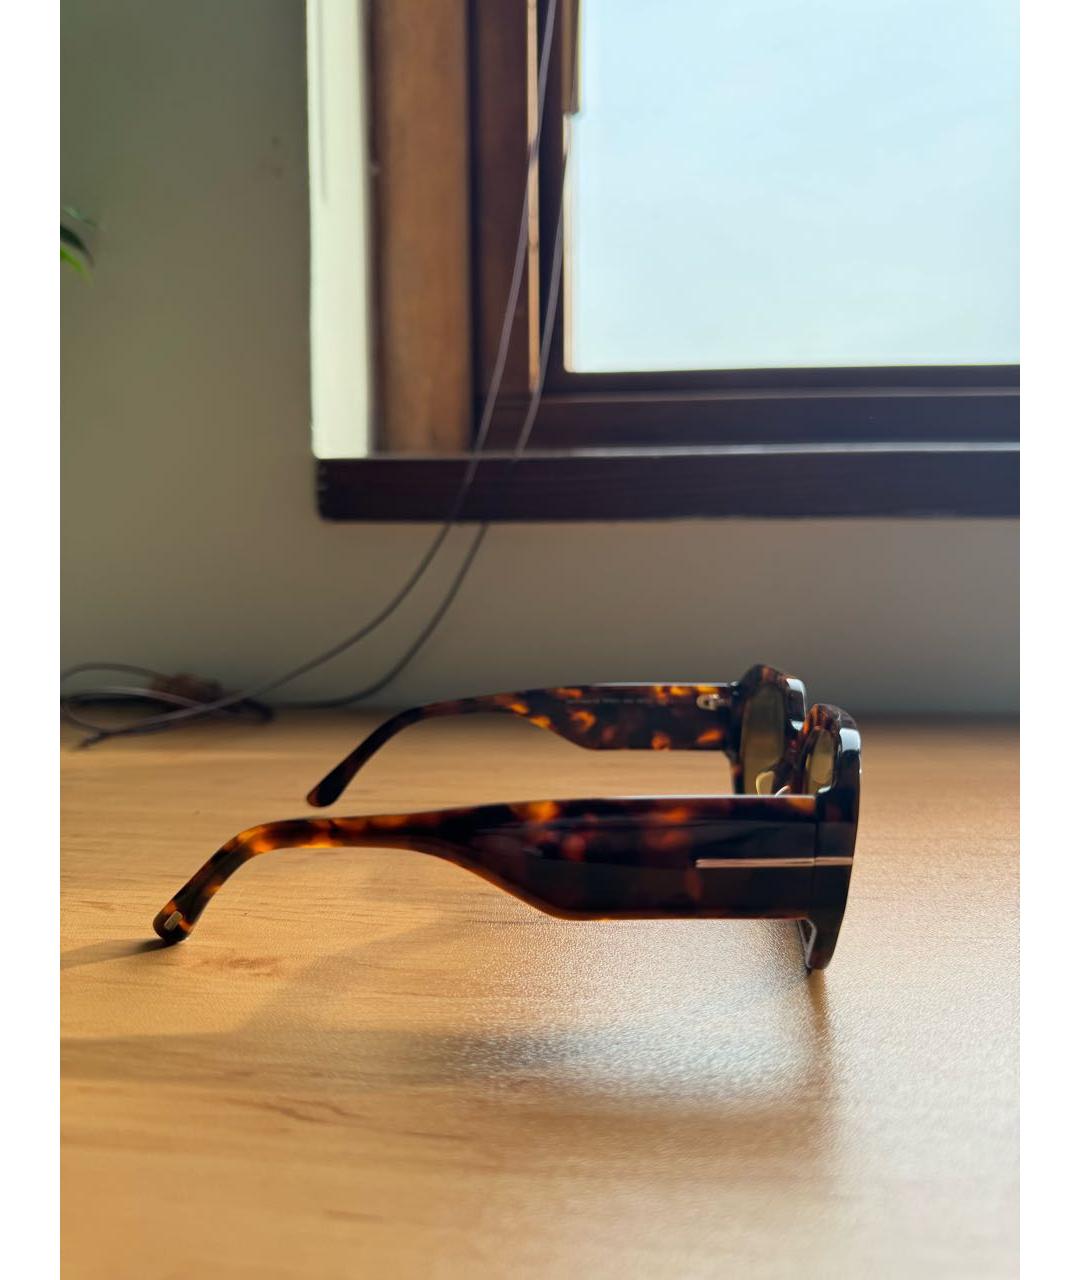 TOM FORD Коричневые пластиковые солнцезащитные очки, фото 5